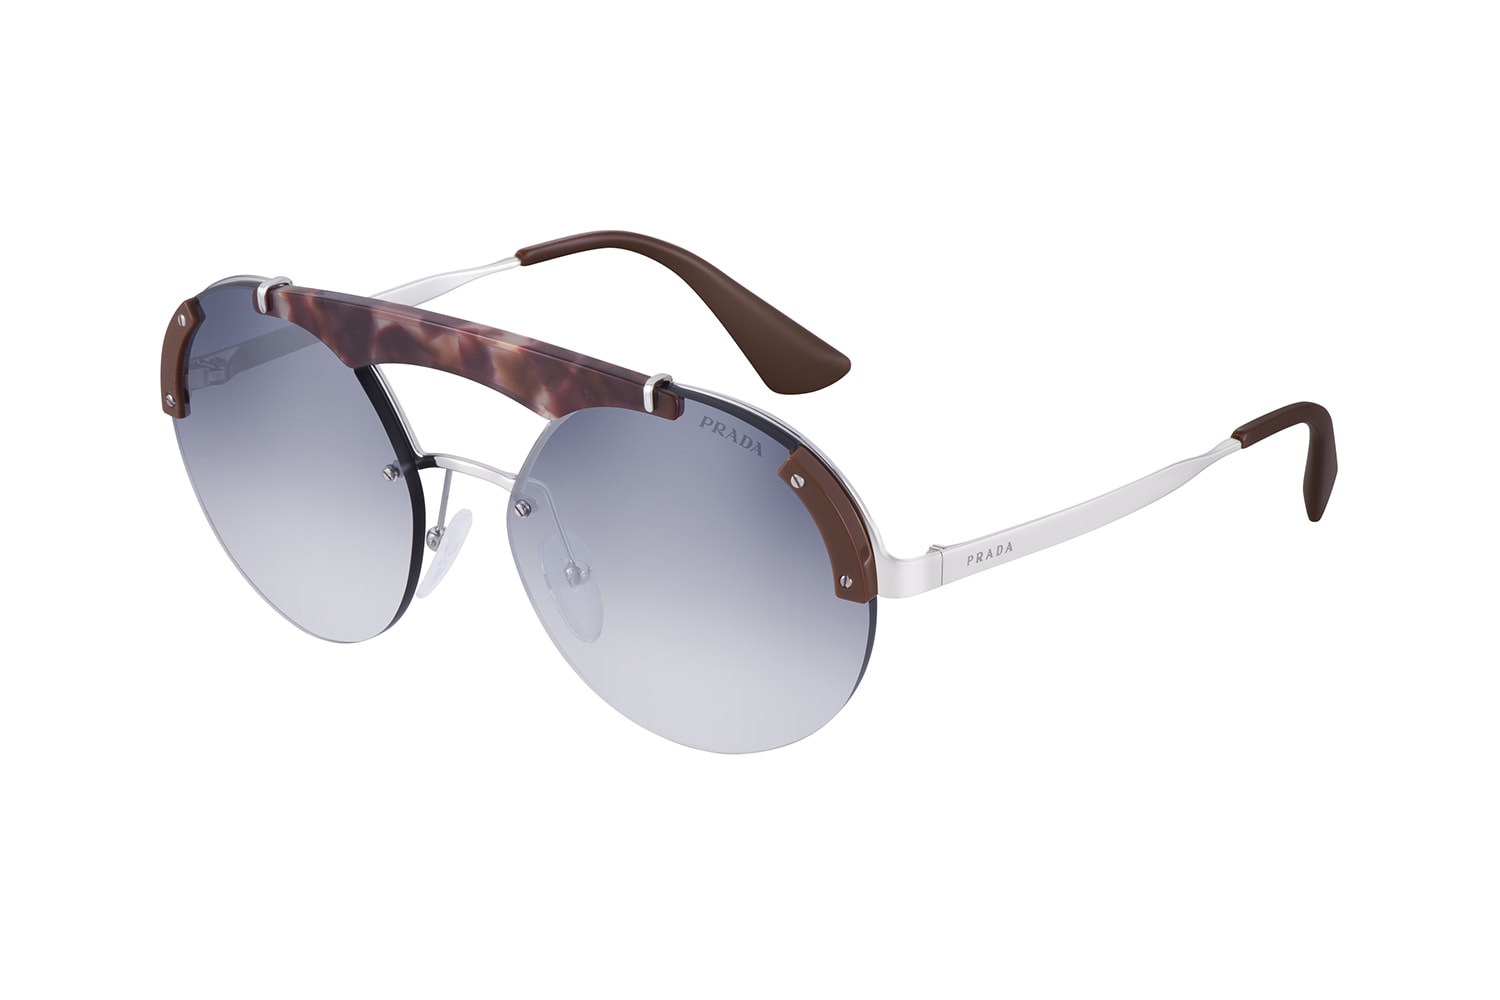 룩소티카 프라다 2017 가을 겨울 남성 선글라스 아이웨어 컬렉션 luxottica prada fall winter mens sunglasses eyewear collection